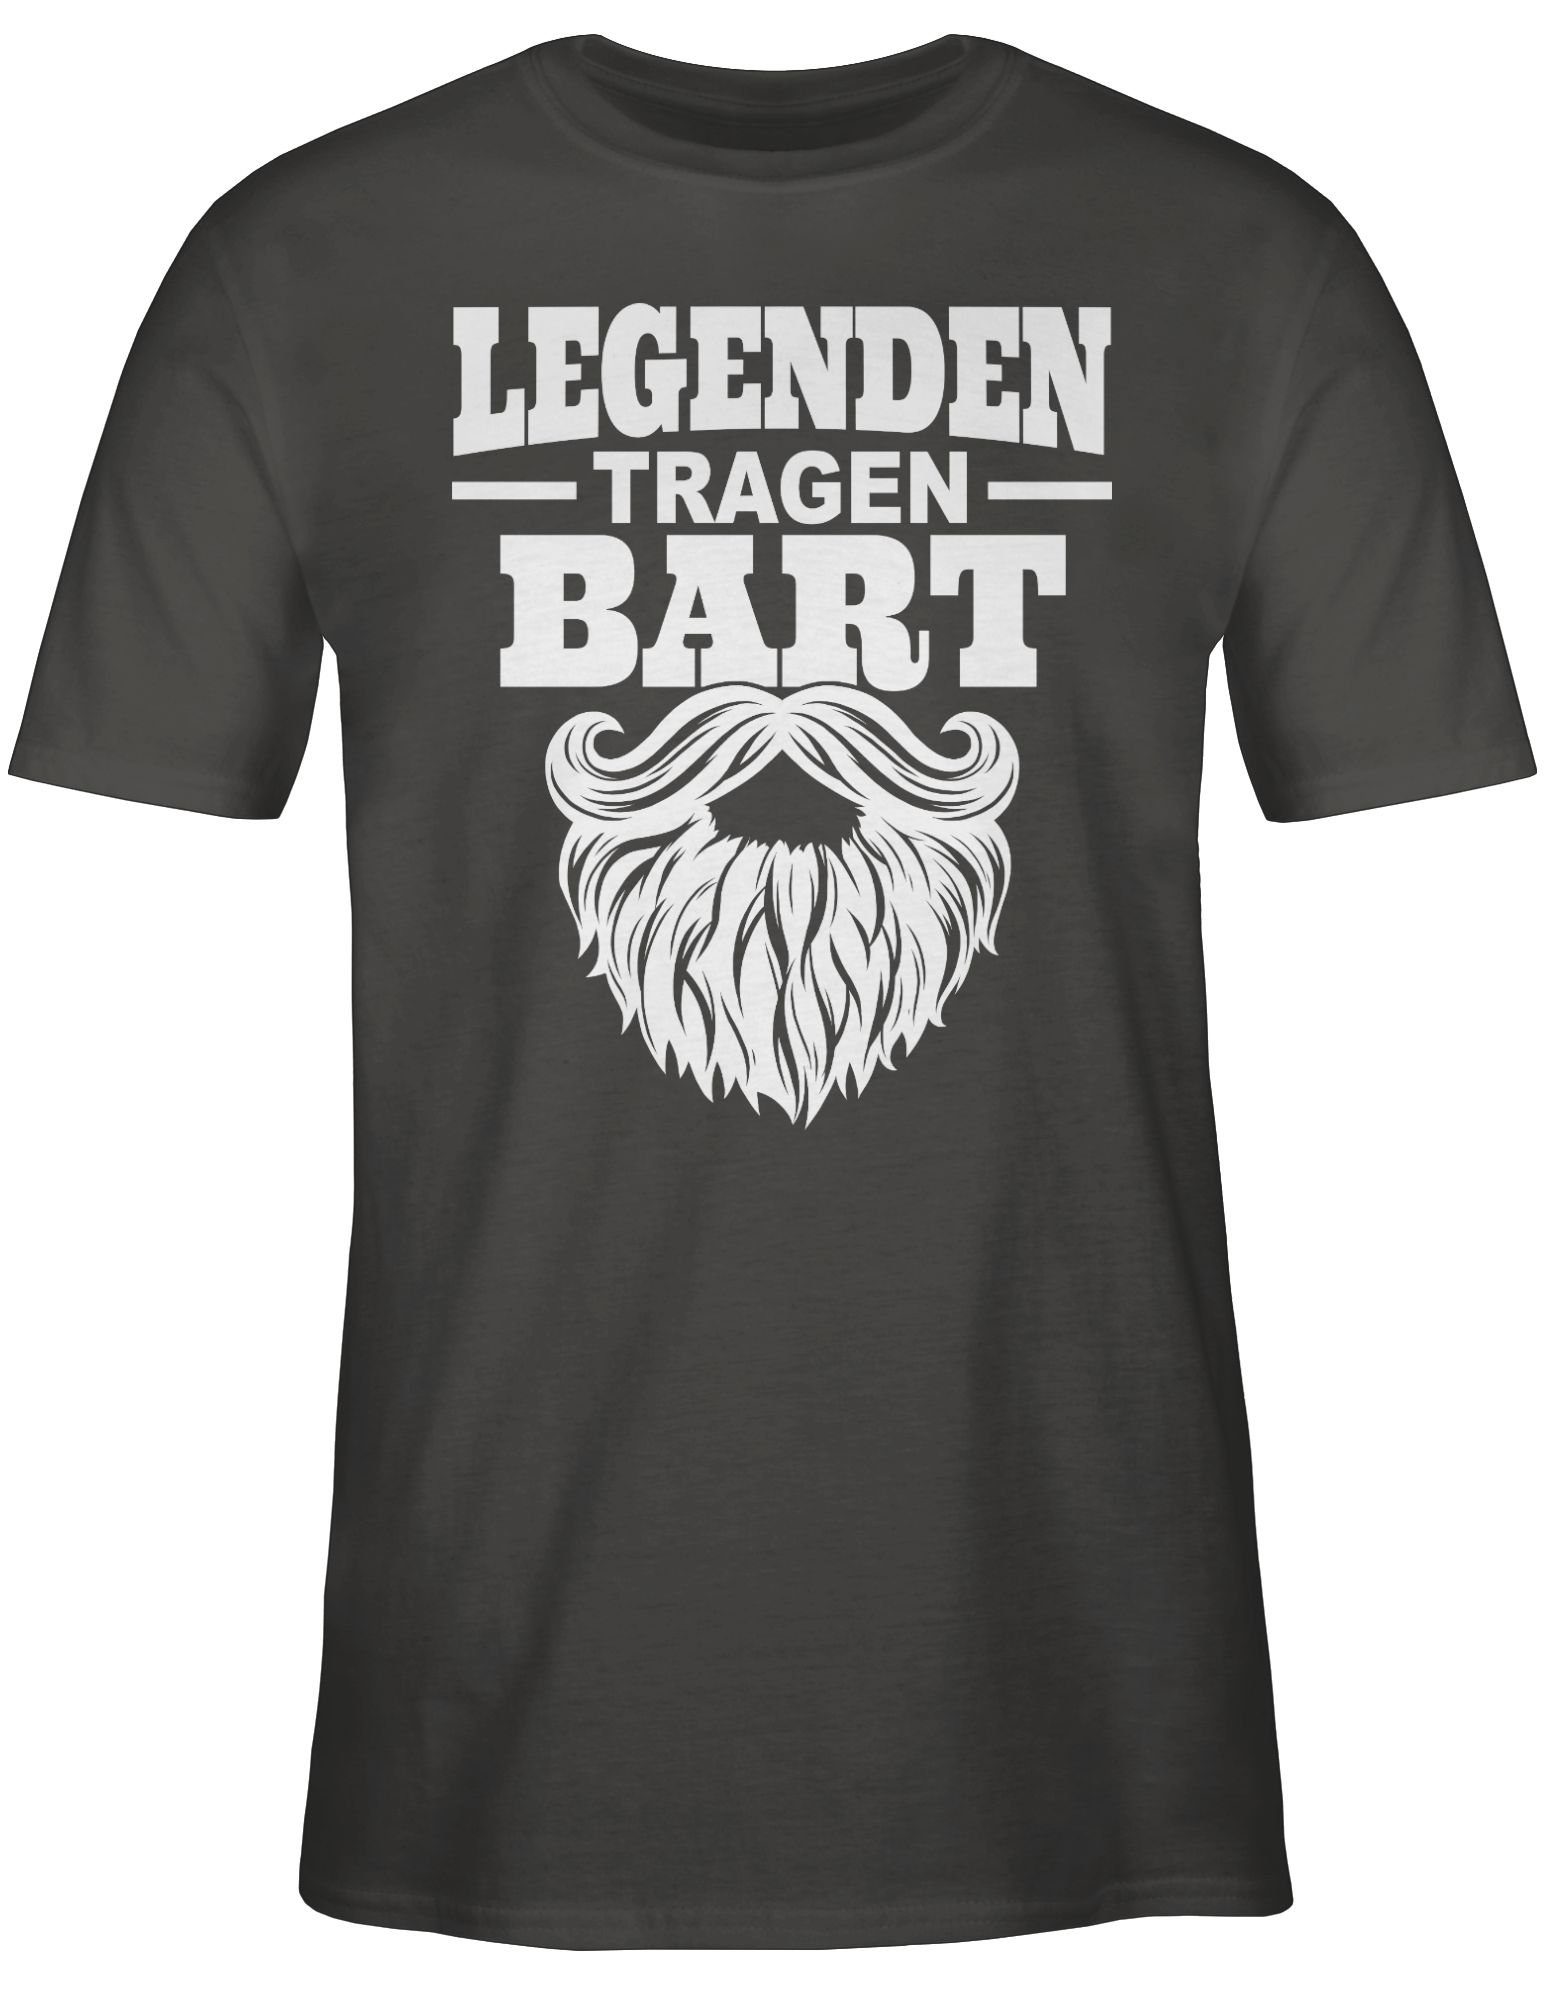 Statement Sprüche Shirtracer T-Shirt mit Legenden Spruch 02 weiß Dunkelgrau tragen Bart